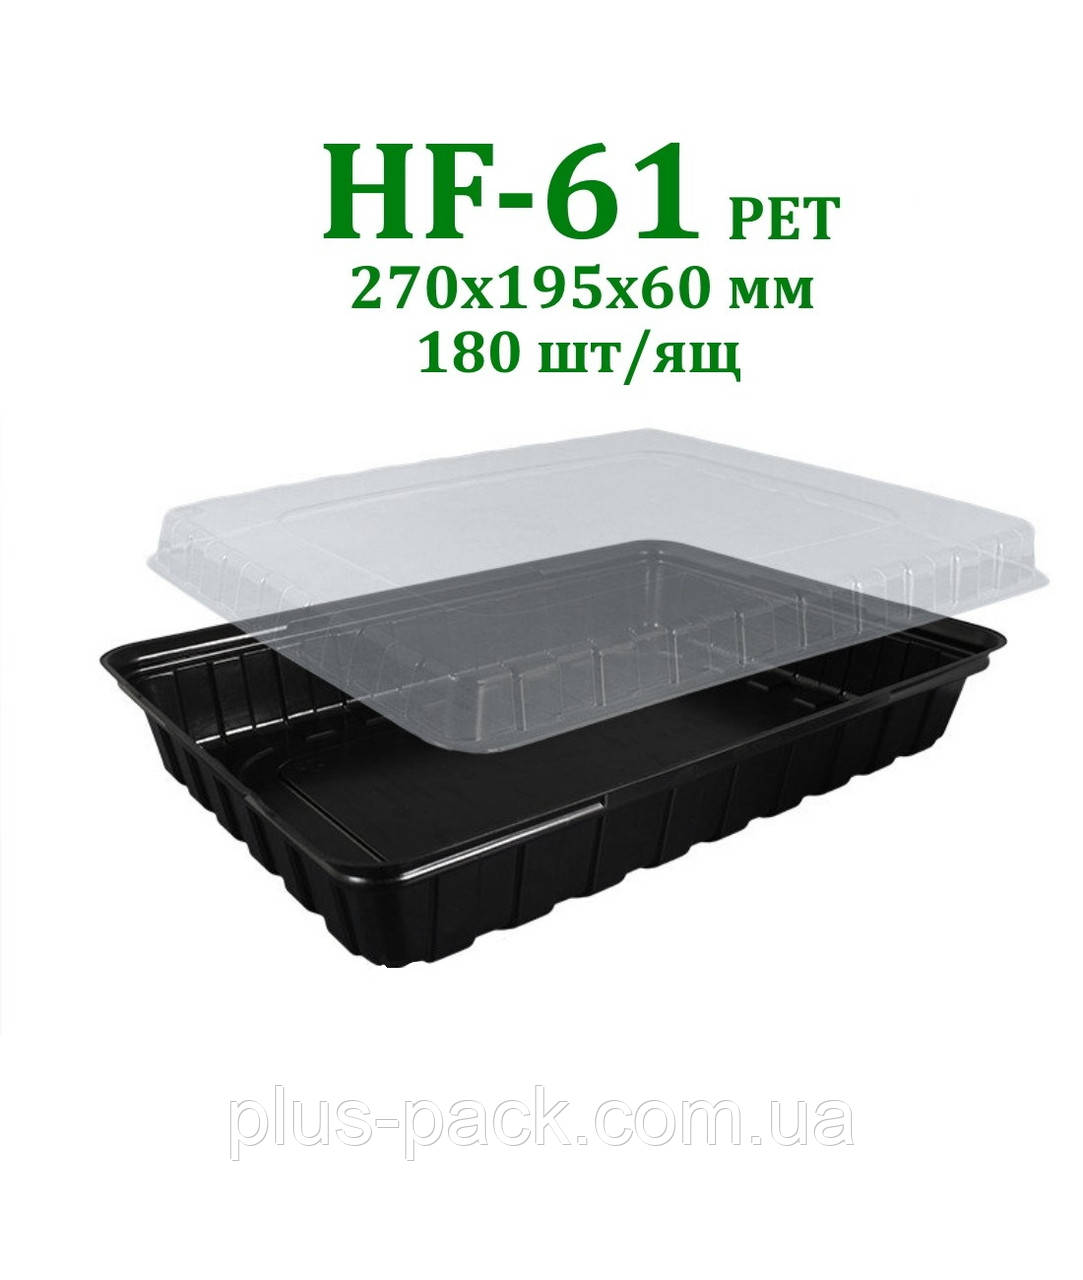 Коробка для суші HF-61 PET, 180шт/ящ